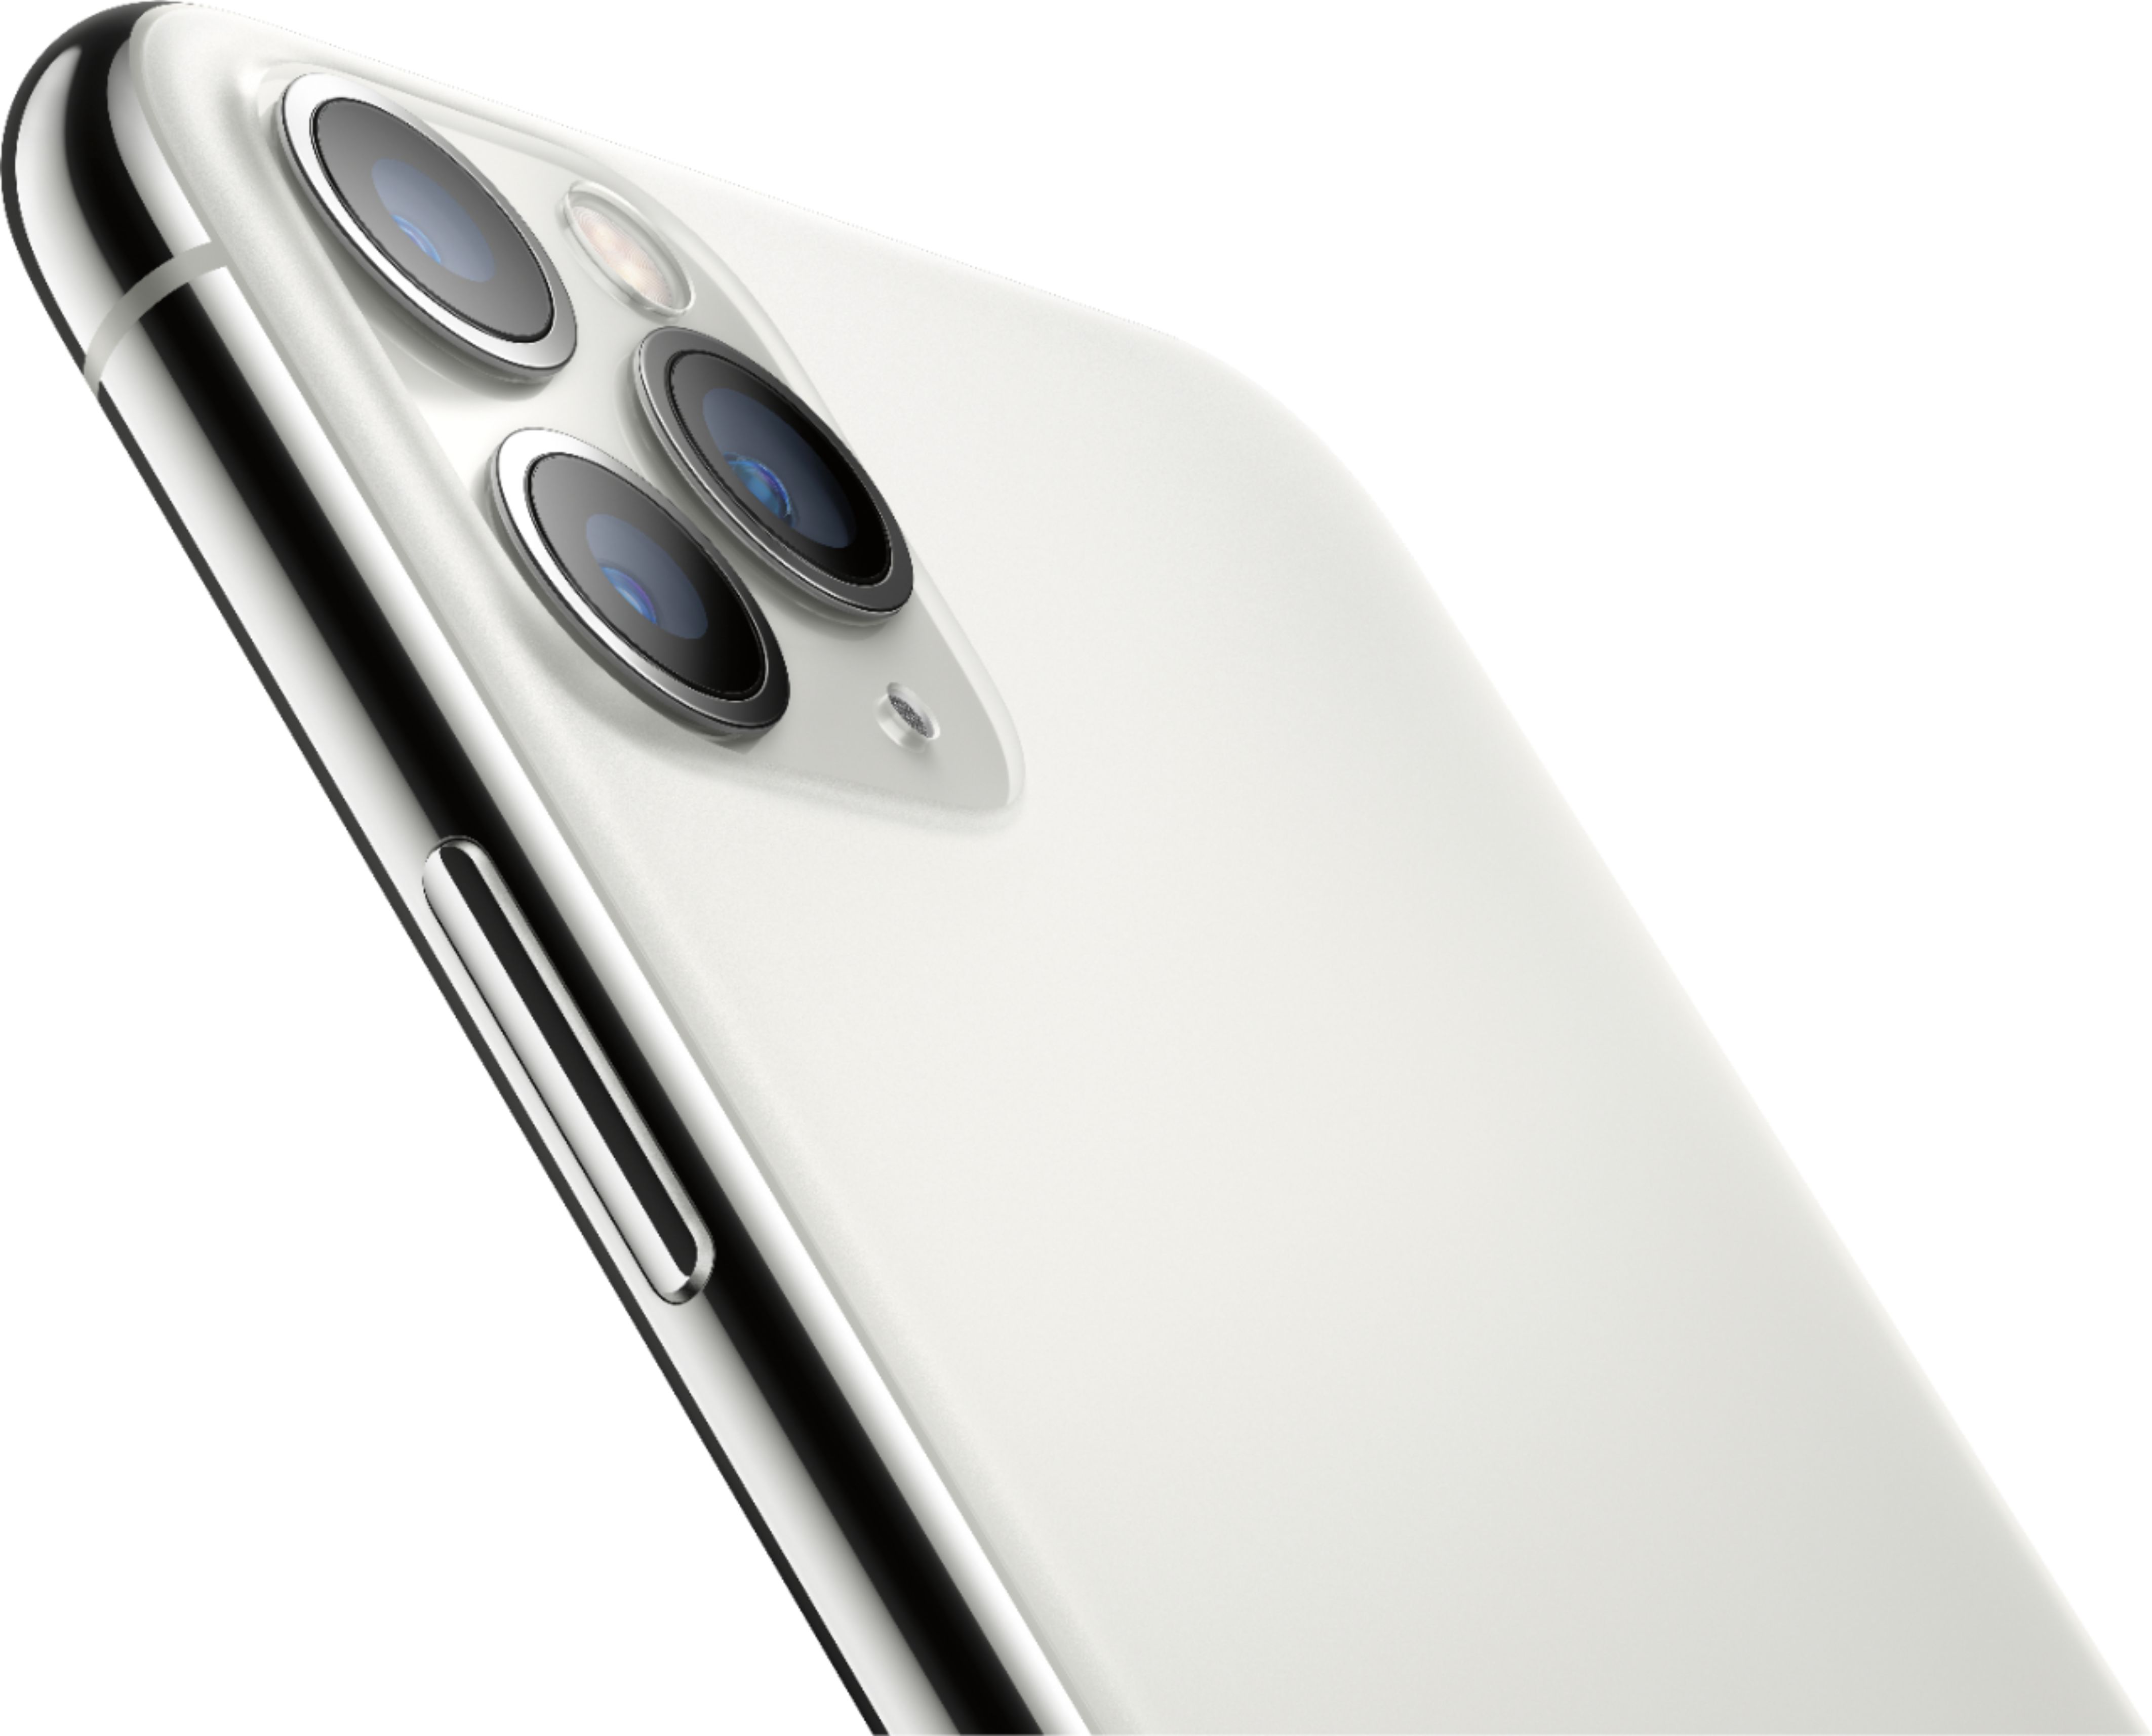 Фото Iphone 6s Silver Для Продажи